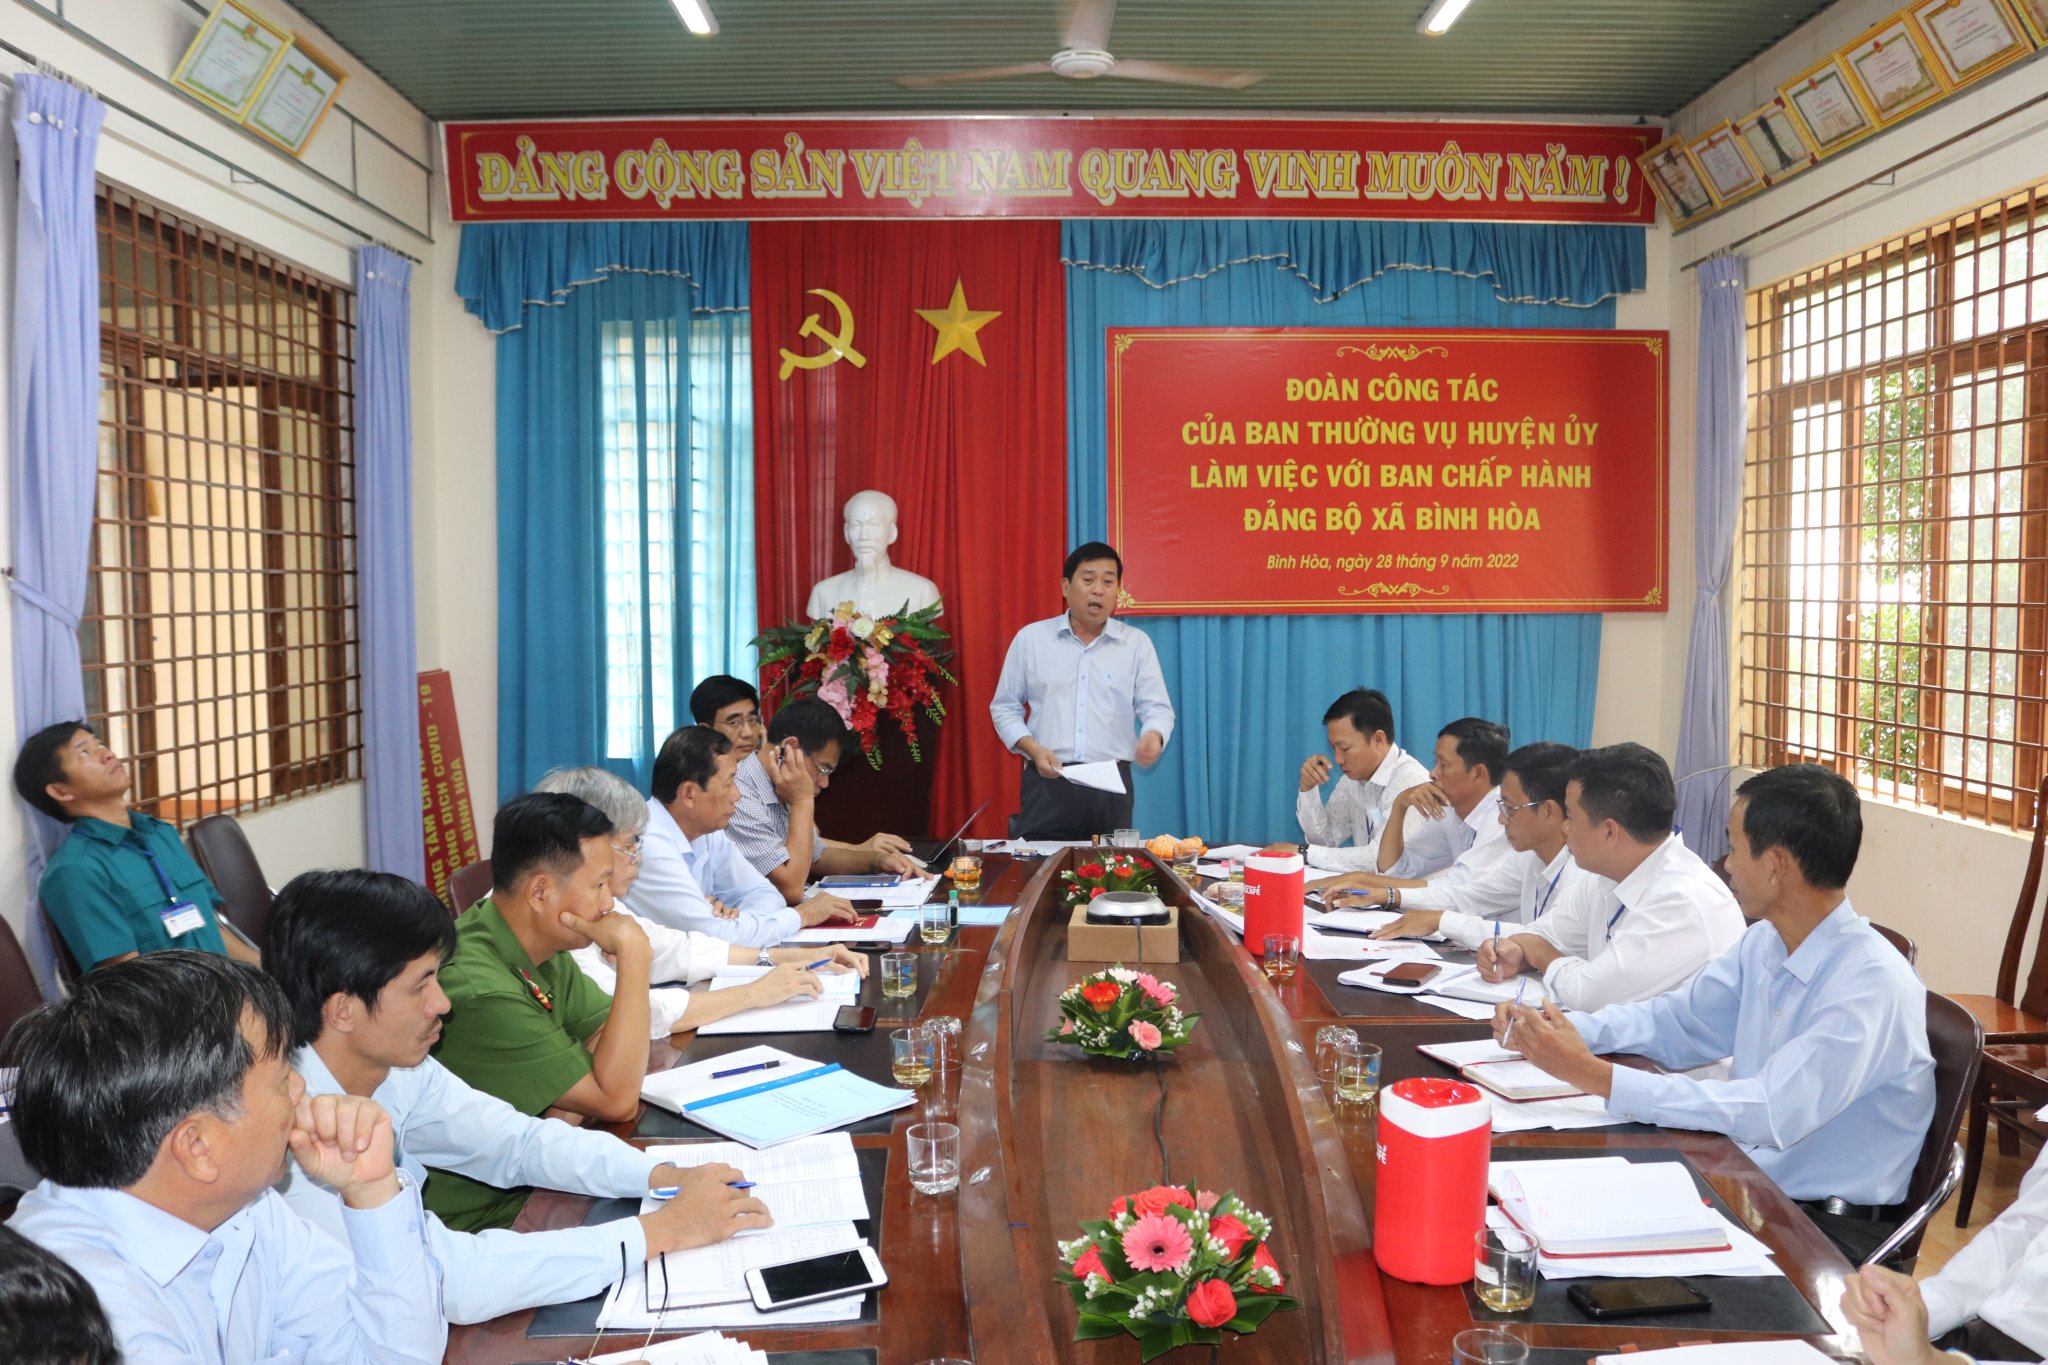 Đoàn công tác của Ban Thường vụ Huyện ủy làm việc với Đảng ủy xã Bình Hòa.